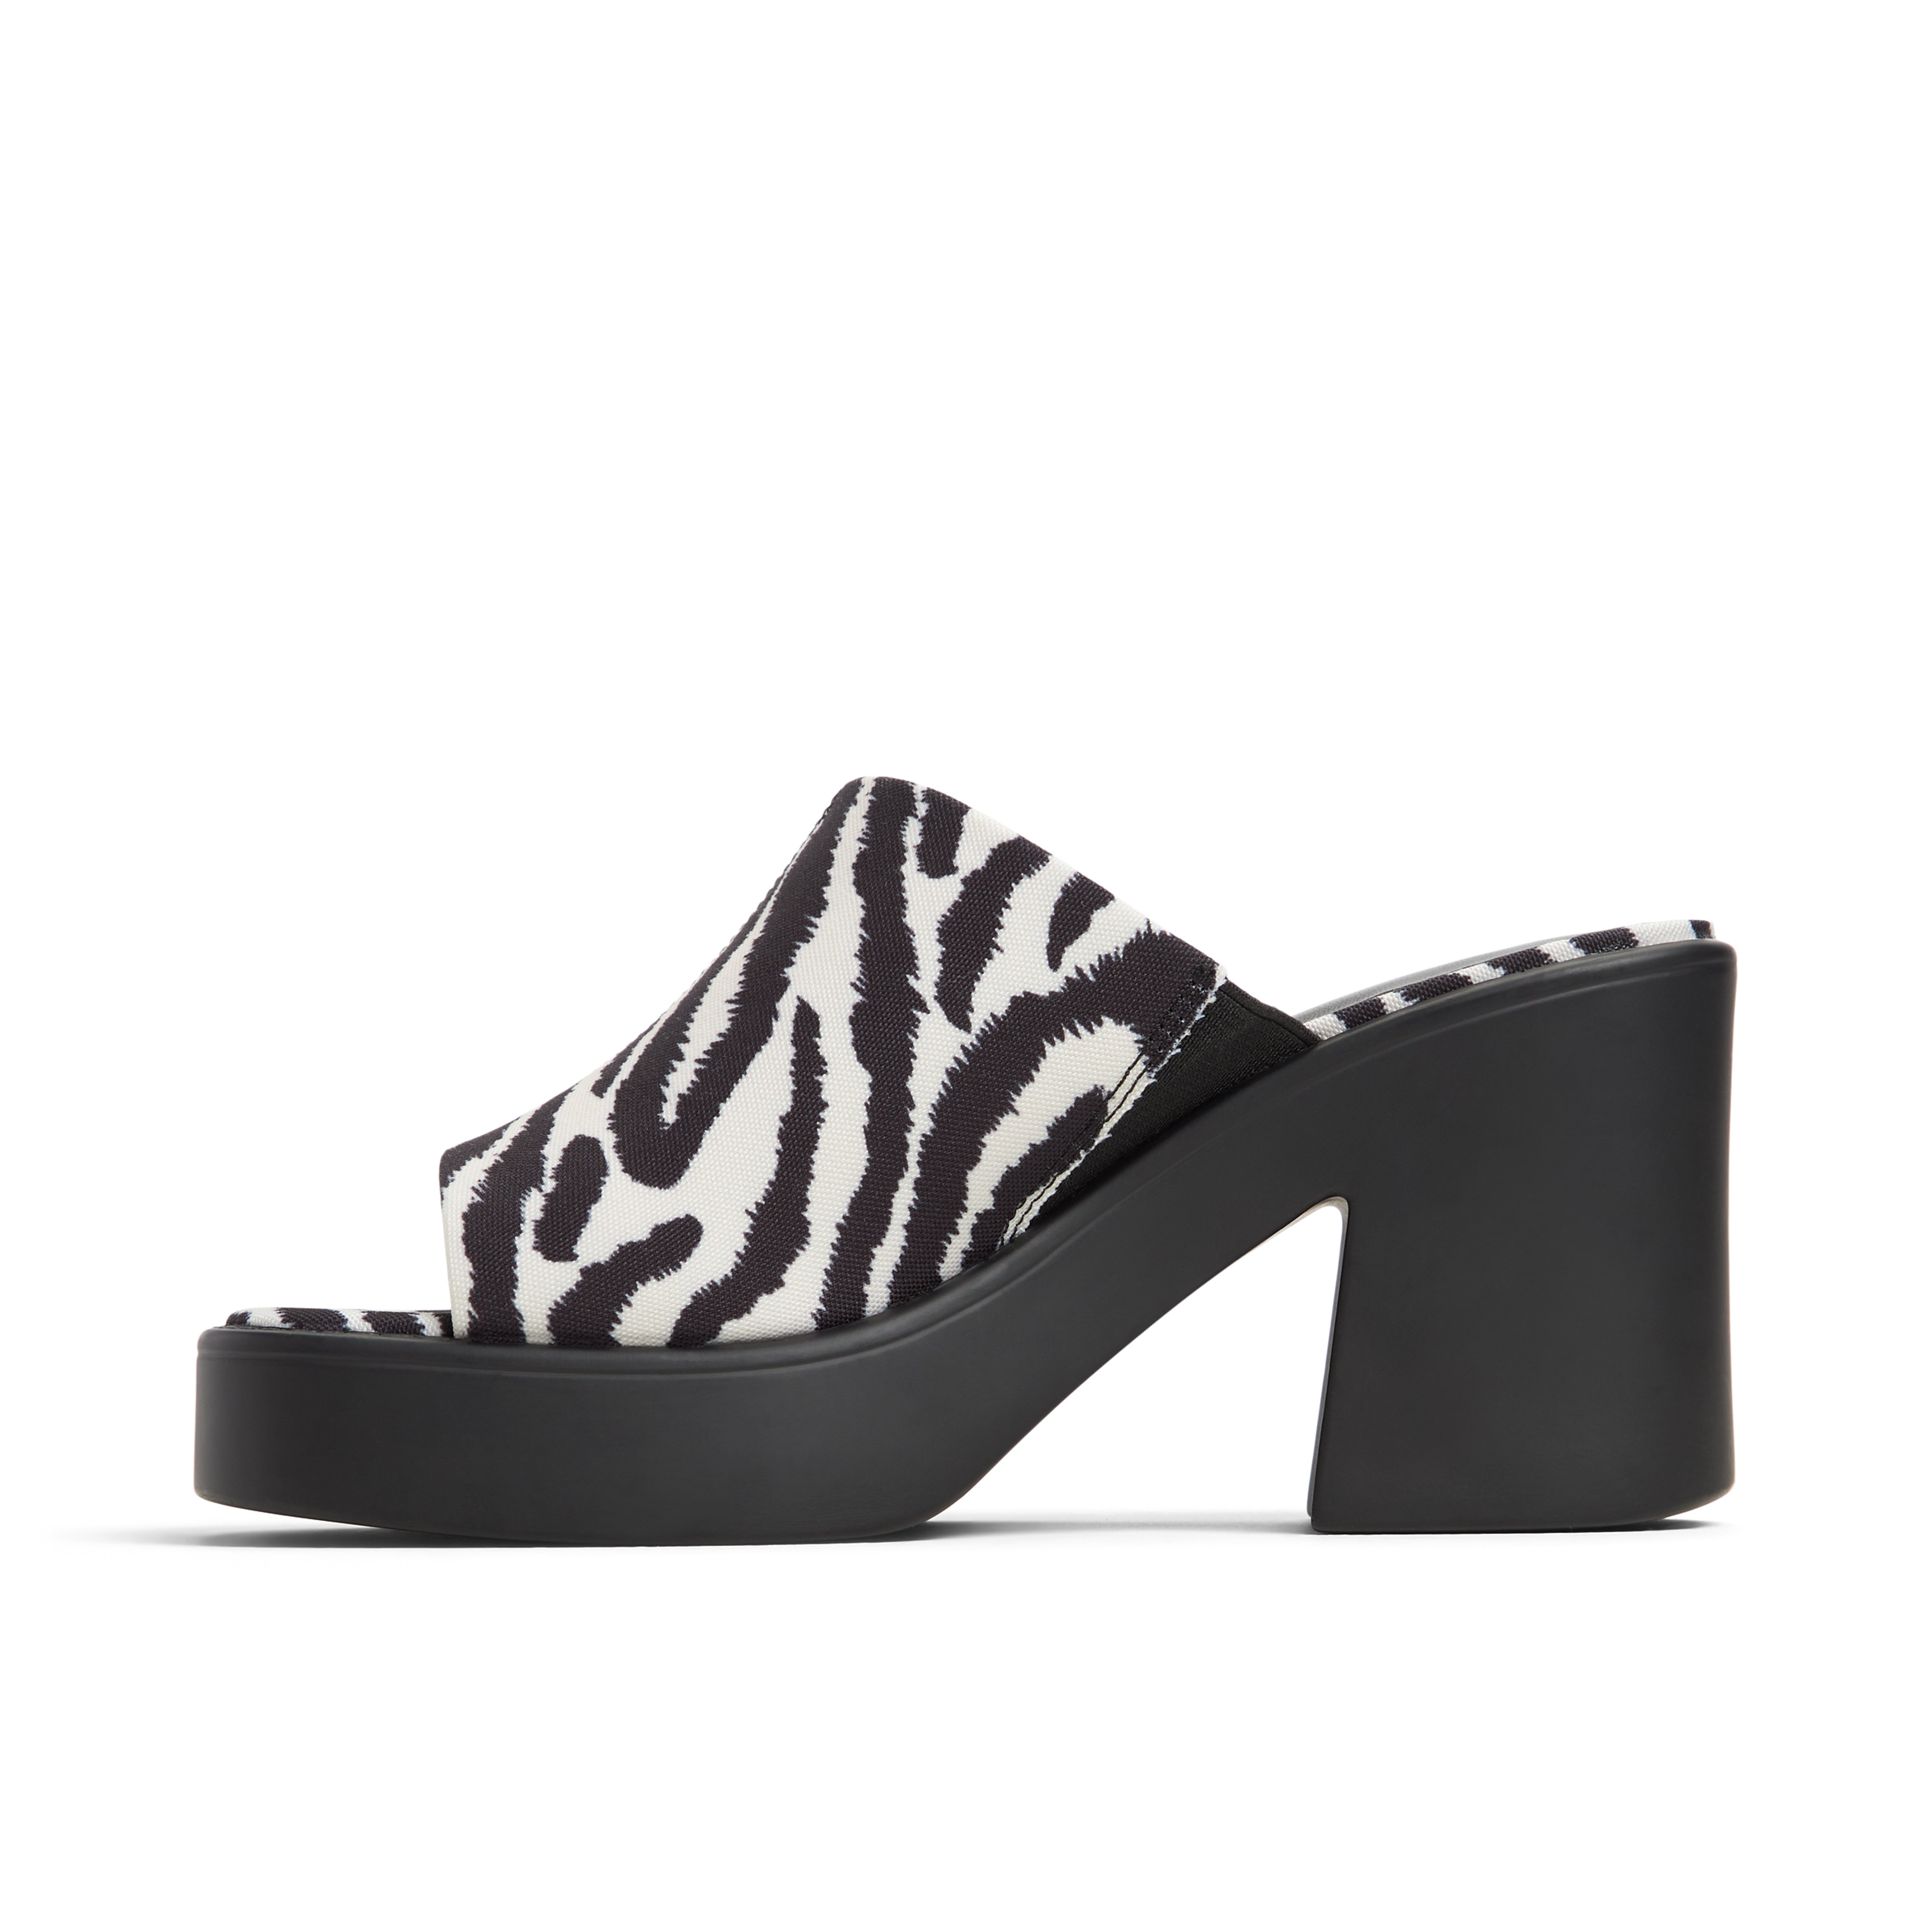 Lauryn High heel mule sandals - Block